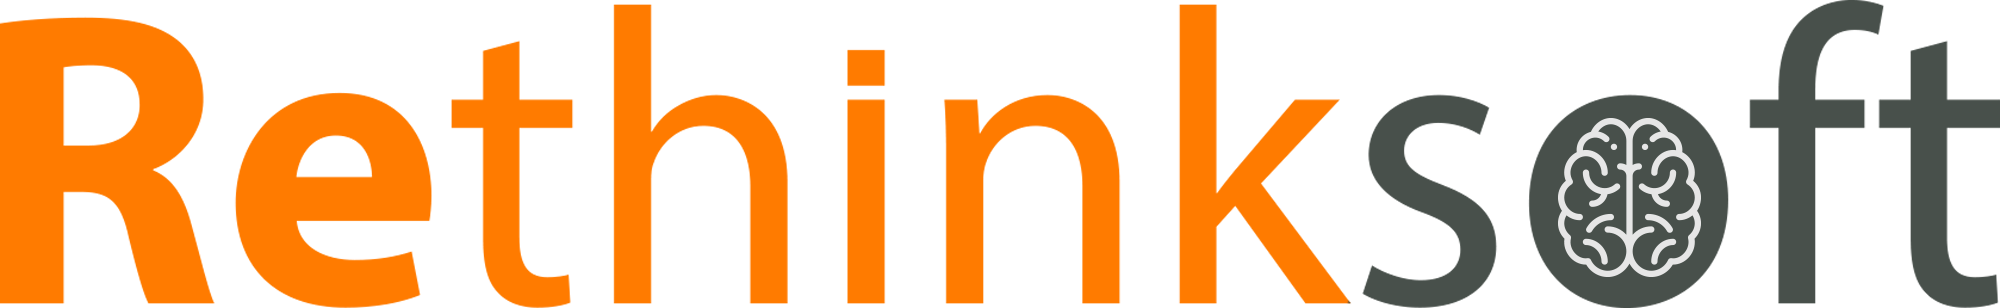 Rethinksoft logo